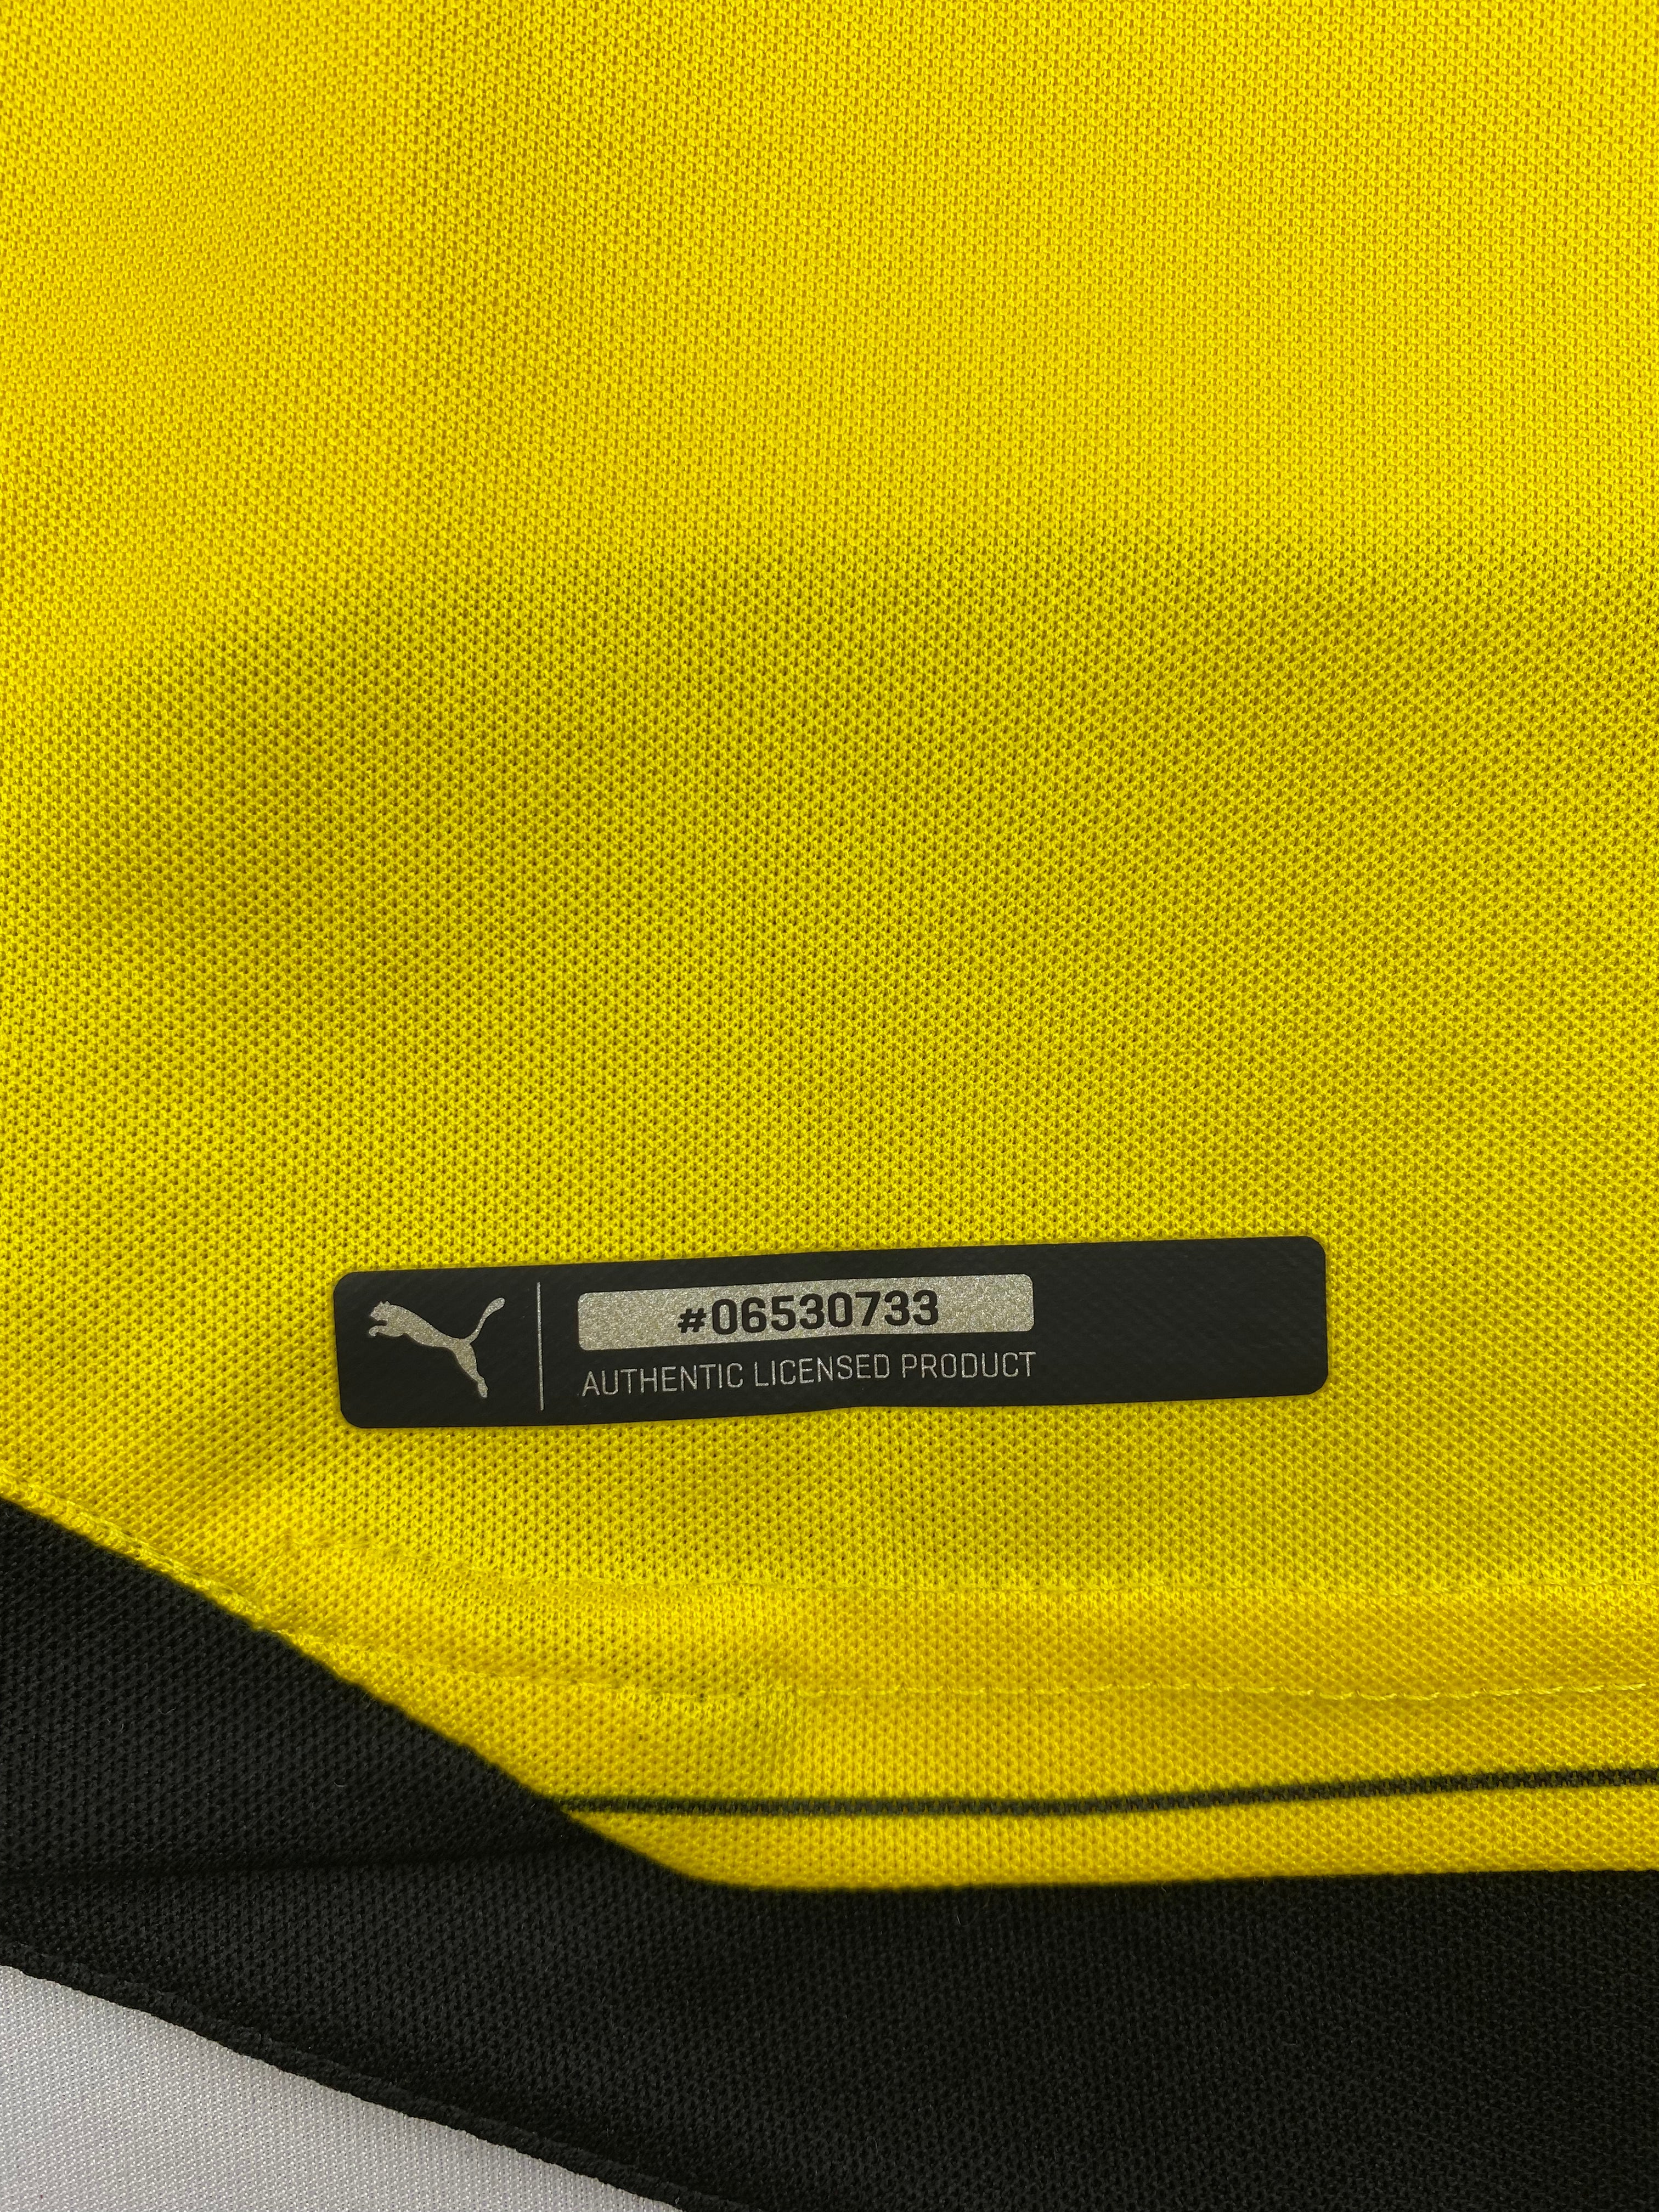 2015/16 Borussia Dortmund Home Shirt (M) 7.5/10